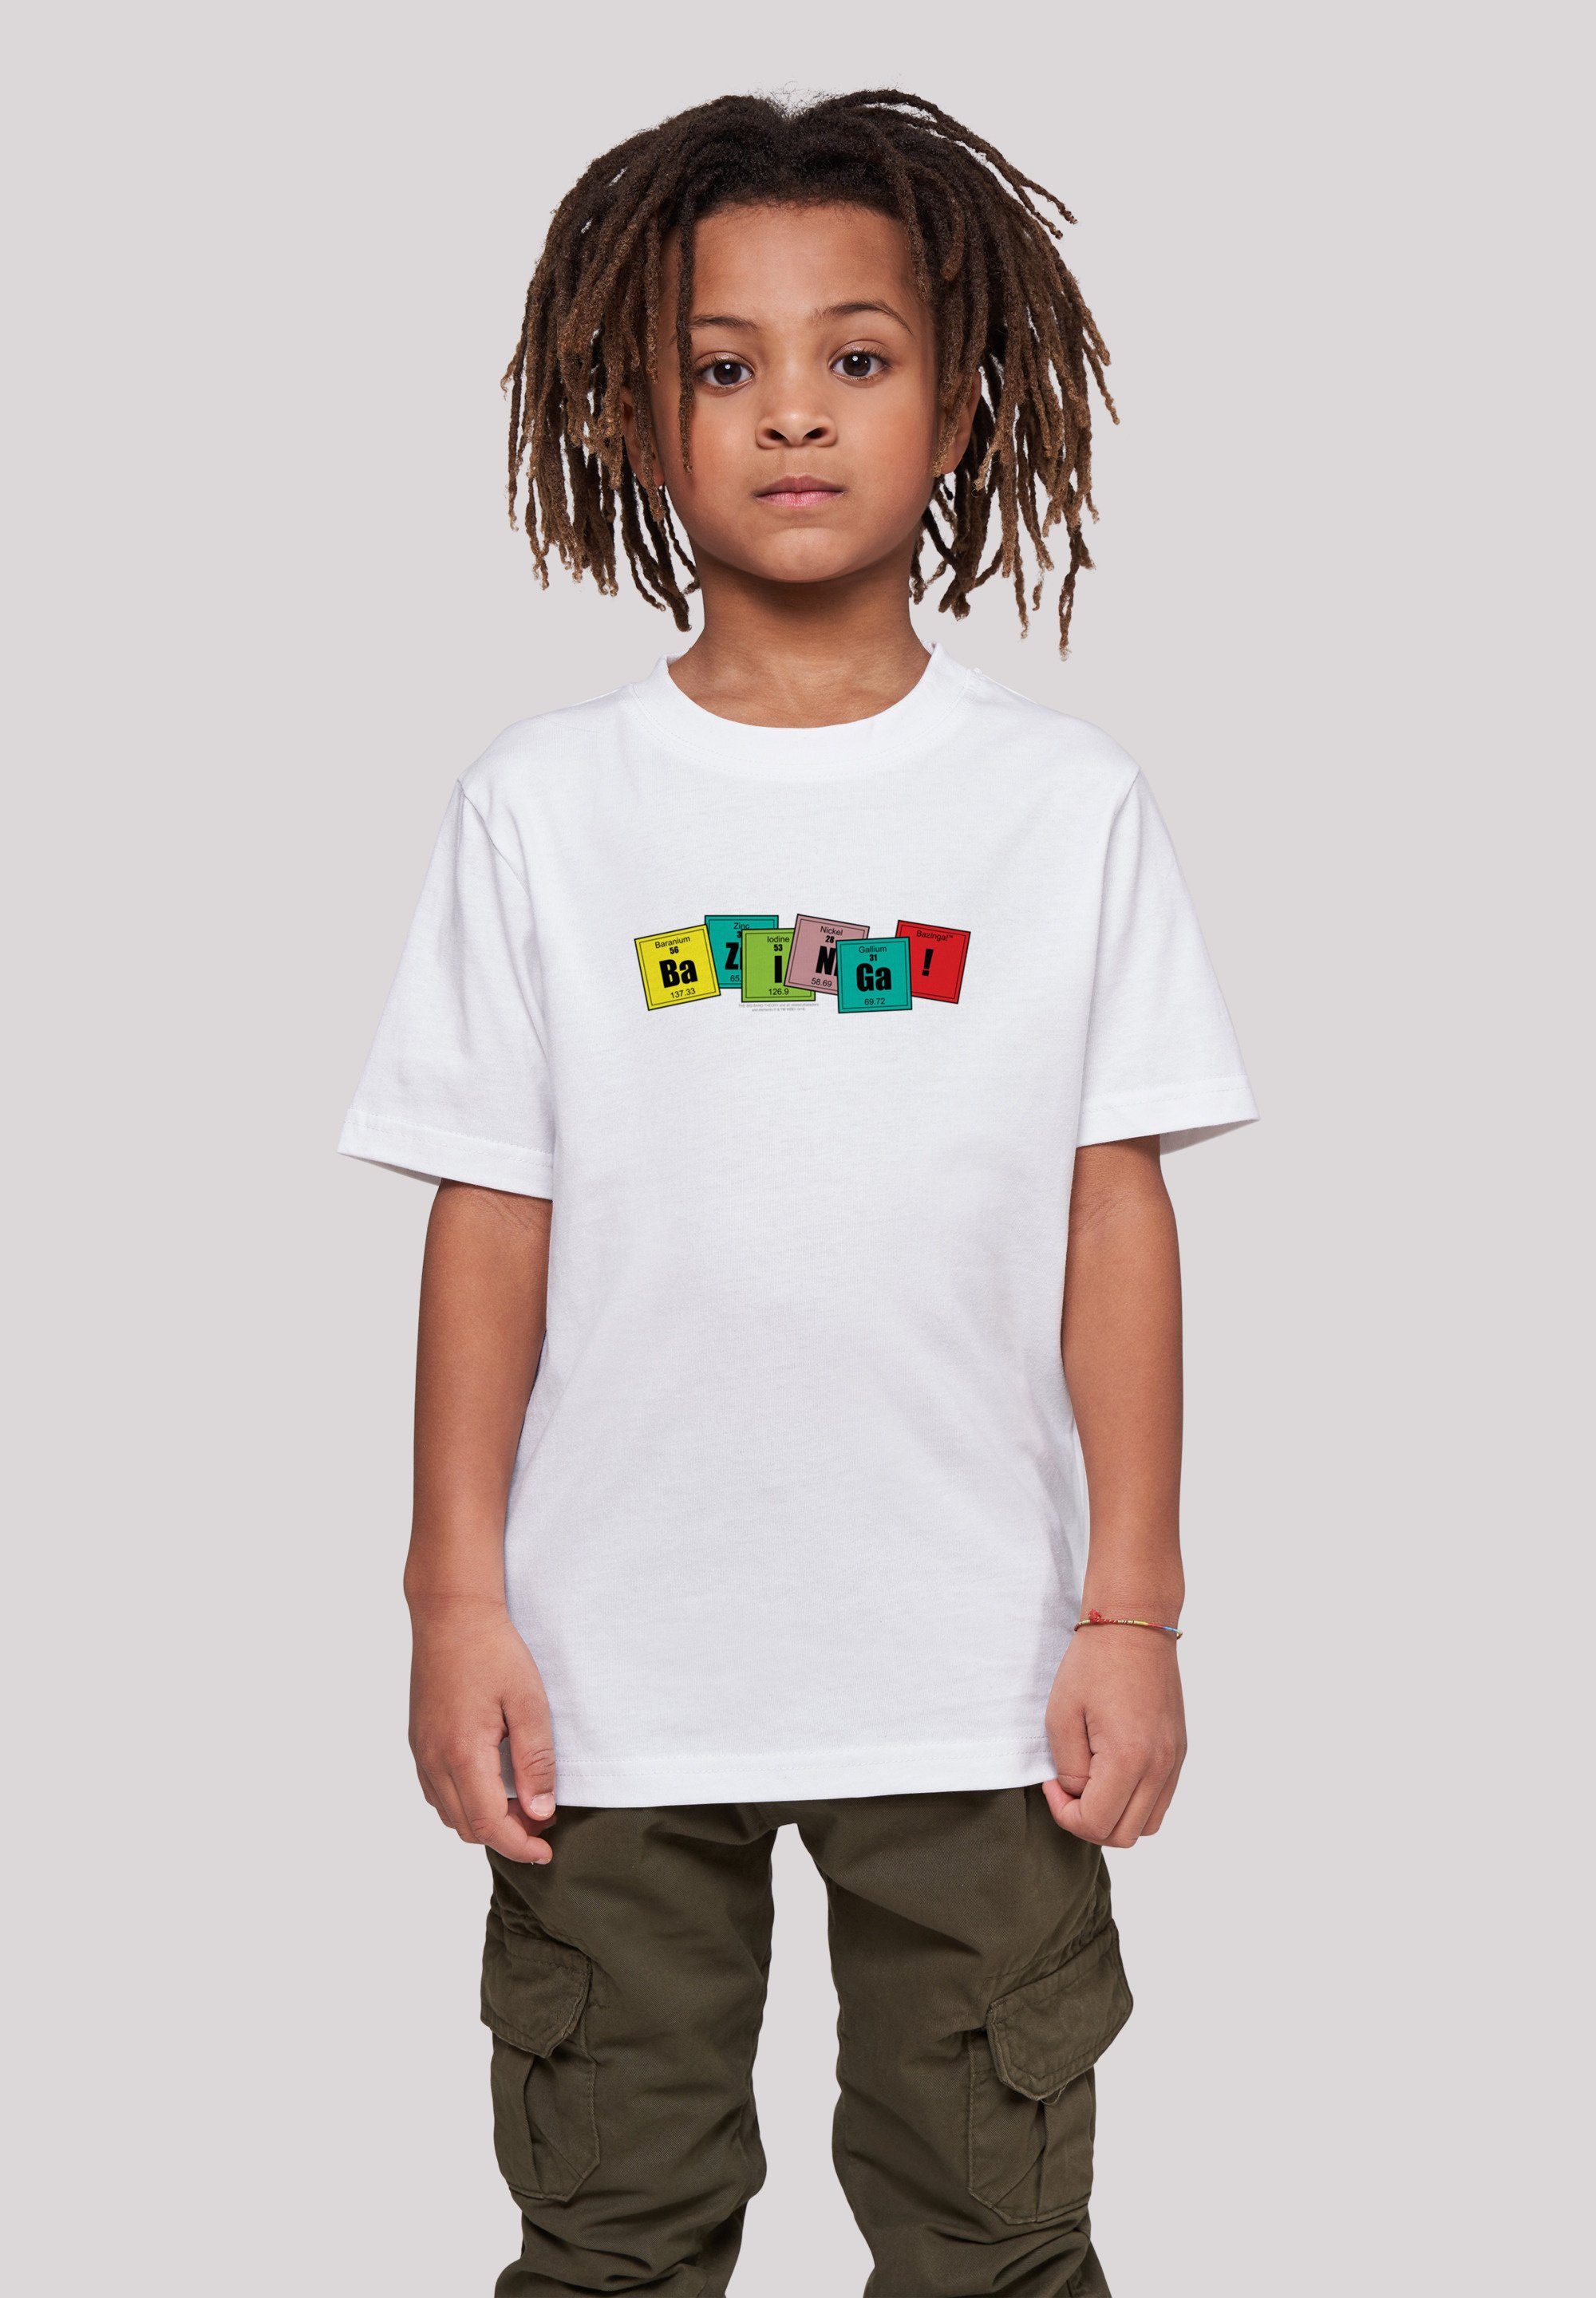 F4NT4STIC T-Shirt Big Bang Theory Bazinga Unisex Kinder,Premium Merch,Jungen,Mädchen,Bedruckt